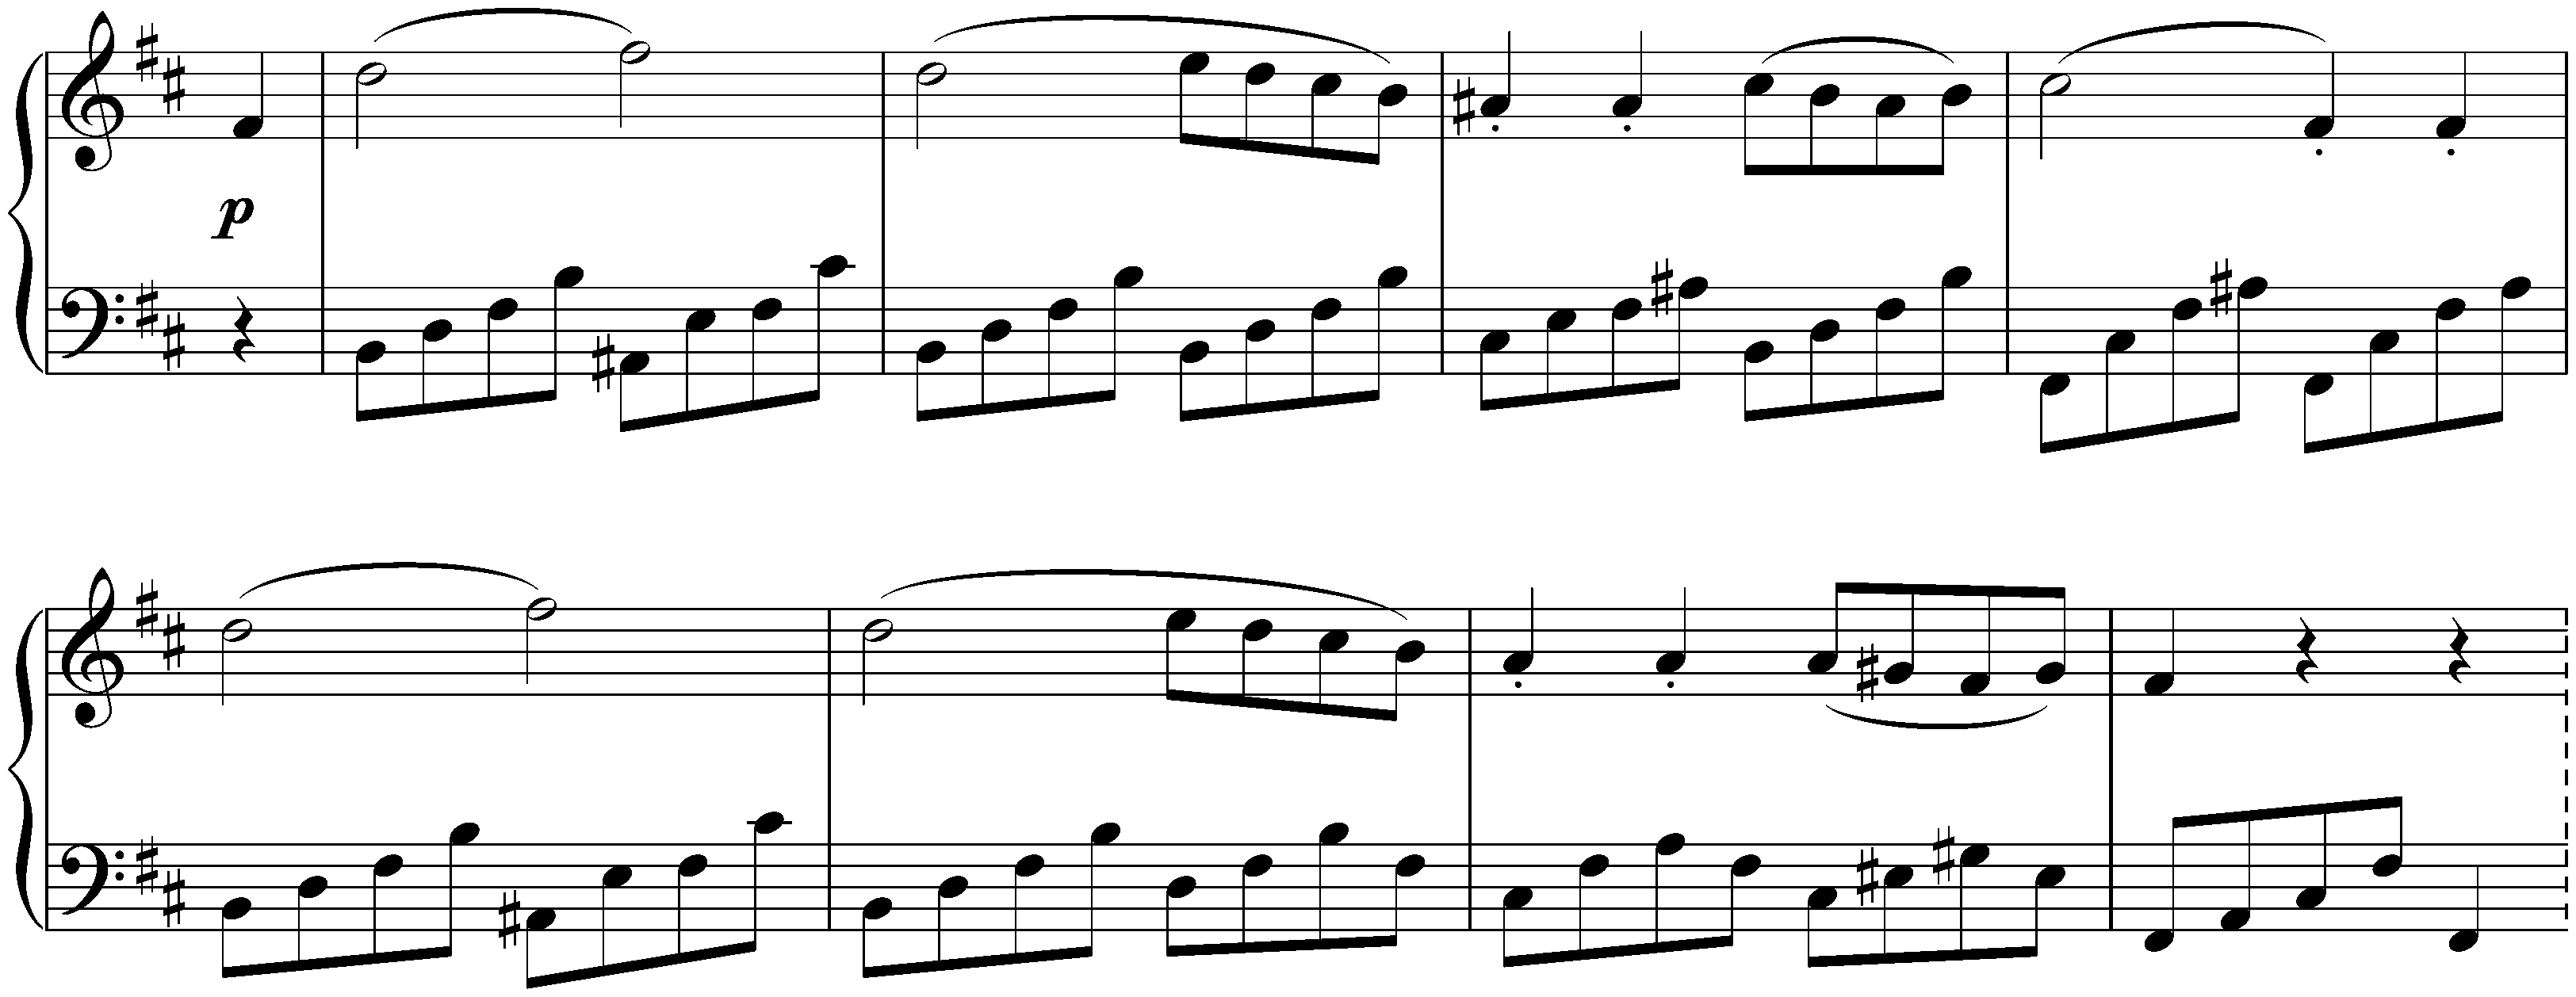 Sonata no. 7 in D major, op. 10 no. 3; 1. Presto